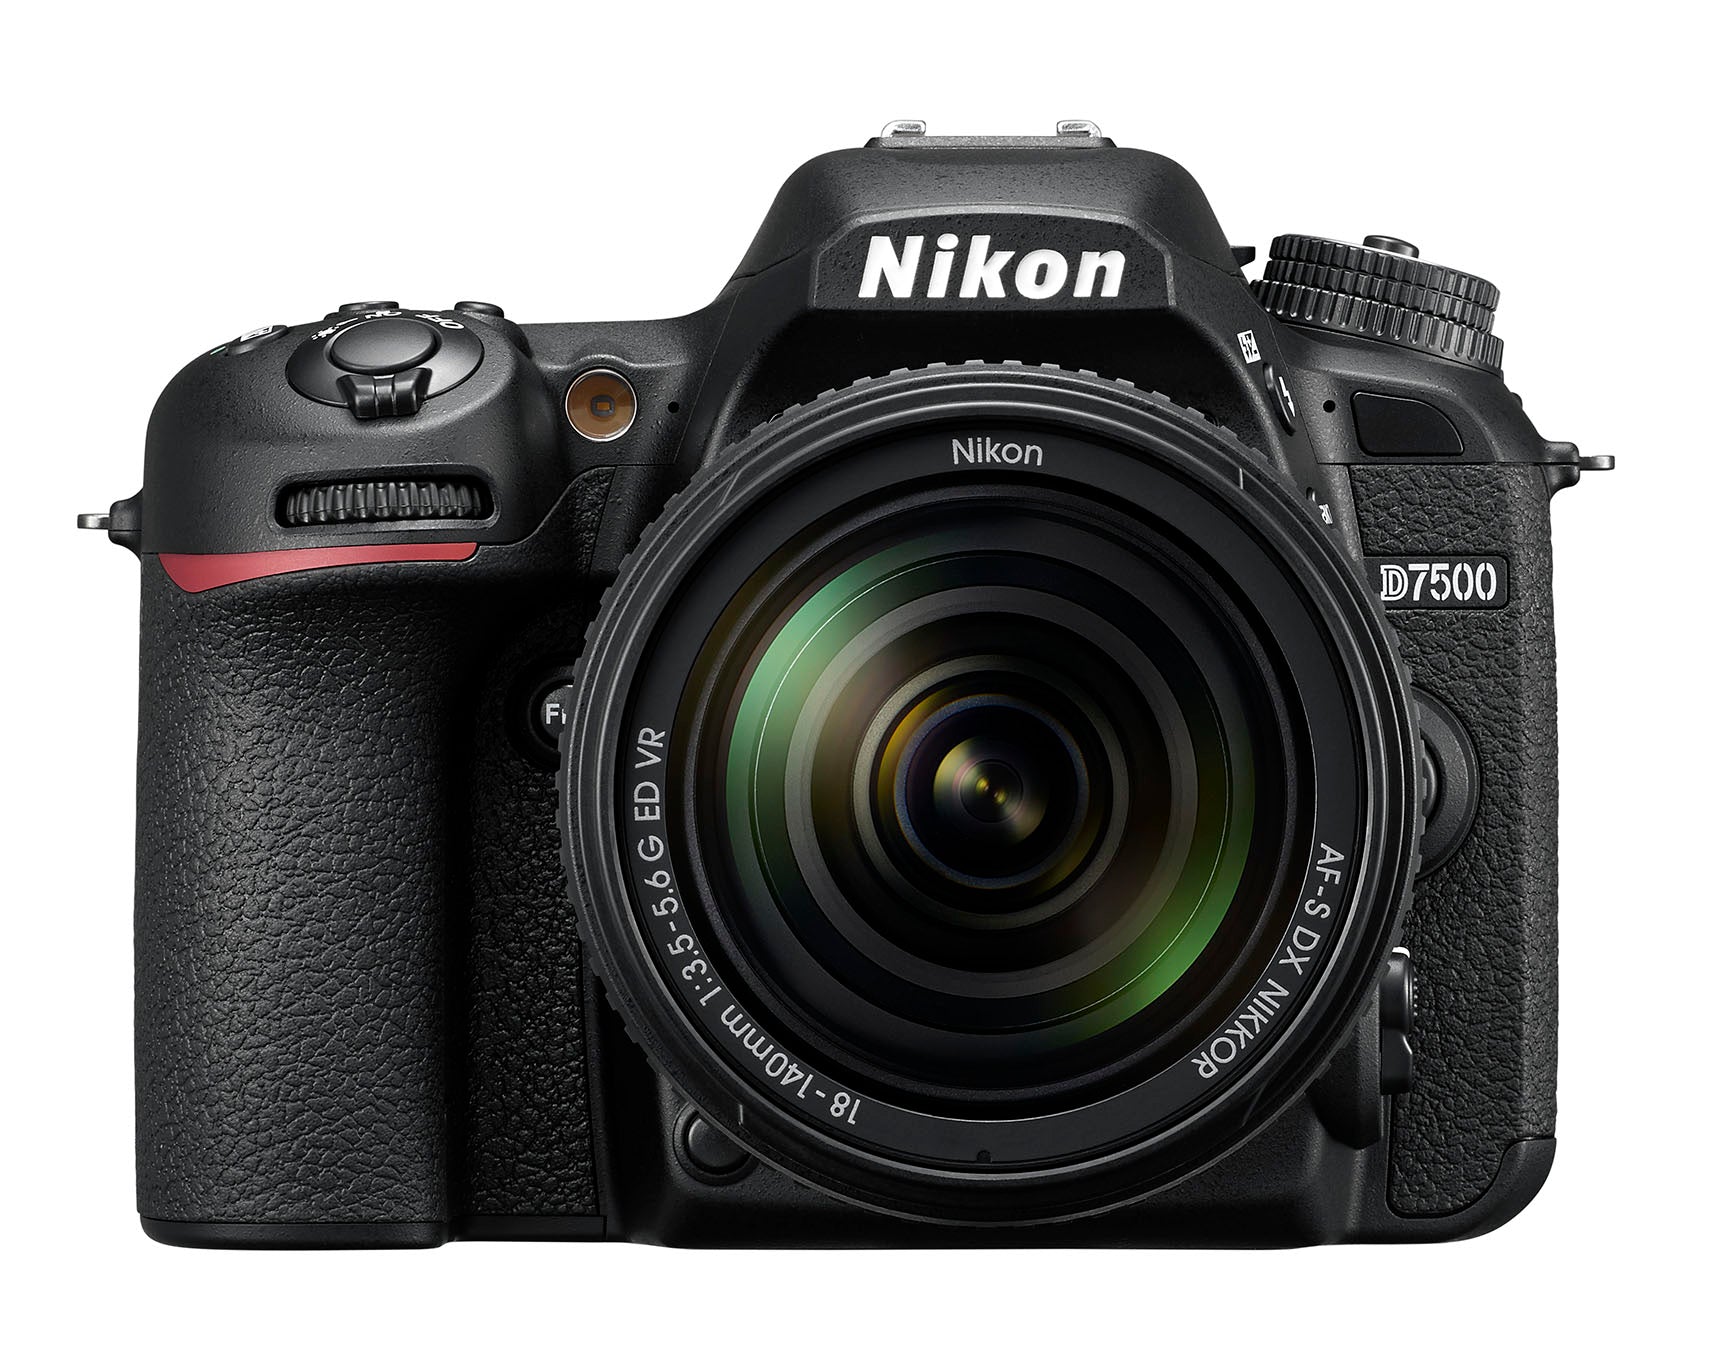 Nikon D7500, AF-S 18-140mm F/3.5-5.6G ED VR